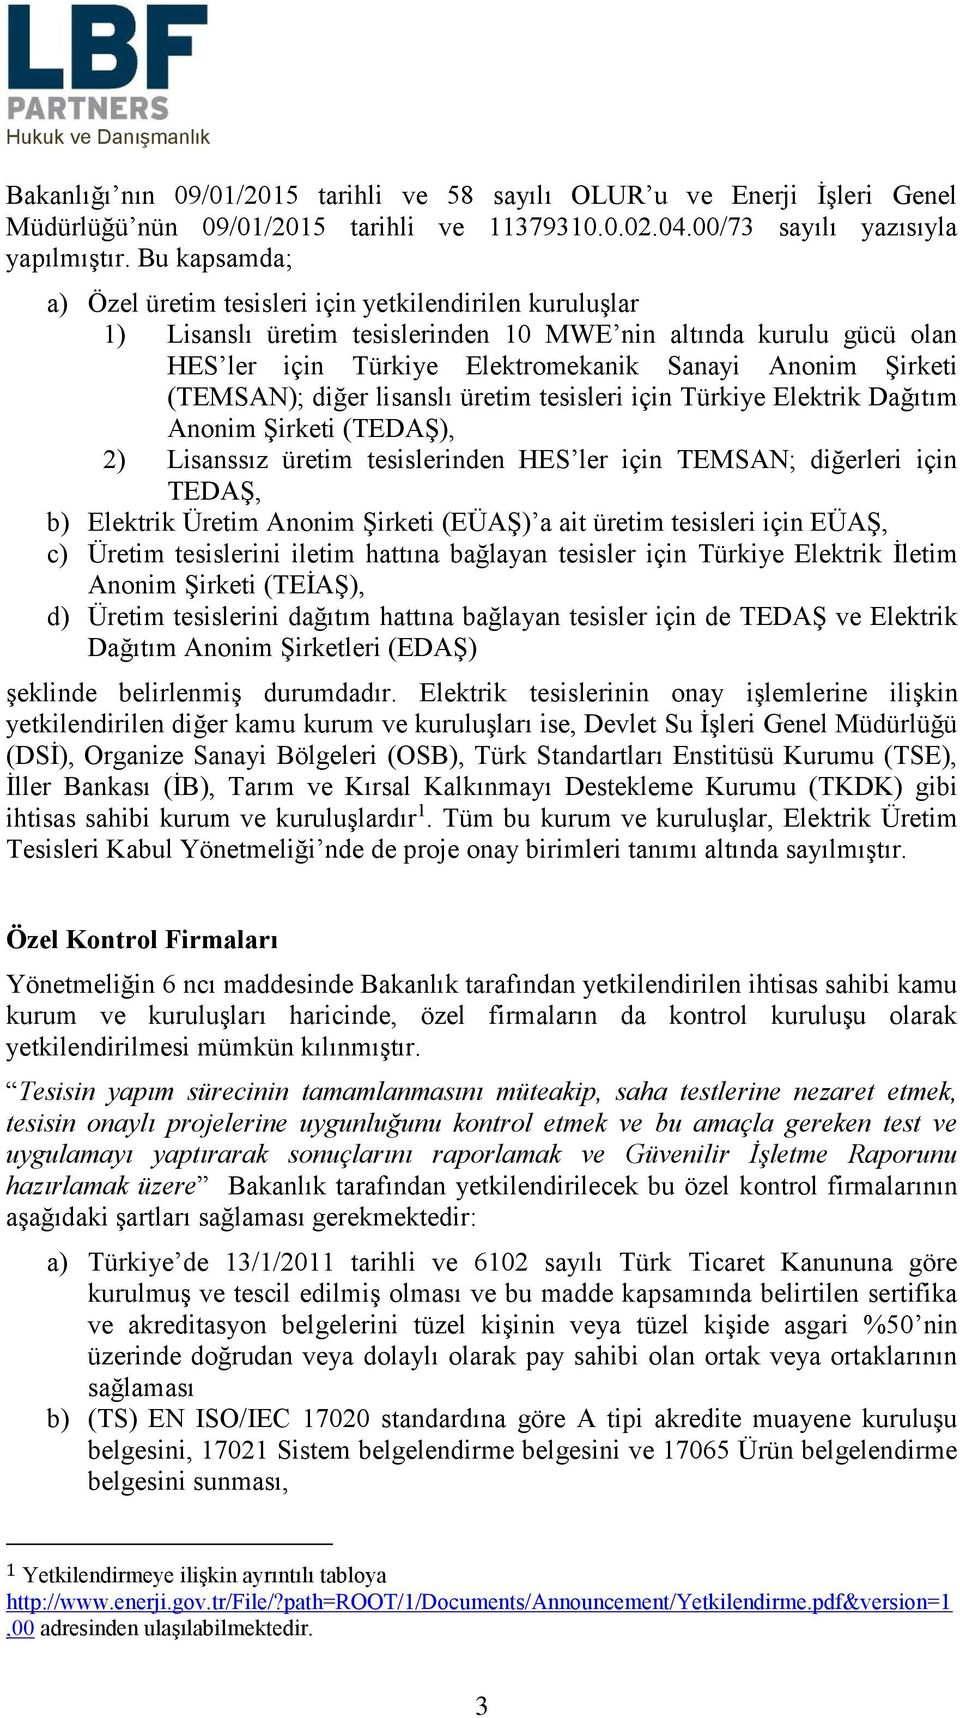 (TEMSAN); diğer lisanslı üretim tesisleri için Türkiye Elektrik Dağıtım Anonim Şirketi (TEDAŞ), 2) Lisanssız üretim tesislerinden HES ler için TEMSAN; diğerleri için TEDAŞ, b) Elektrik Üretim Anonim